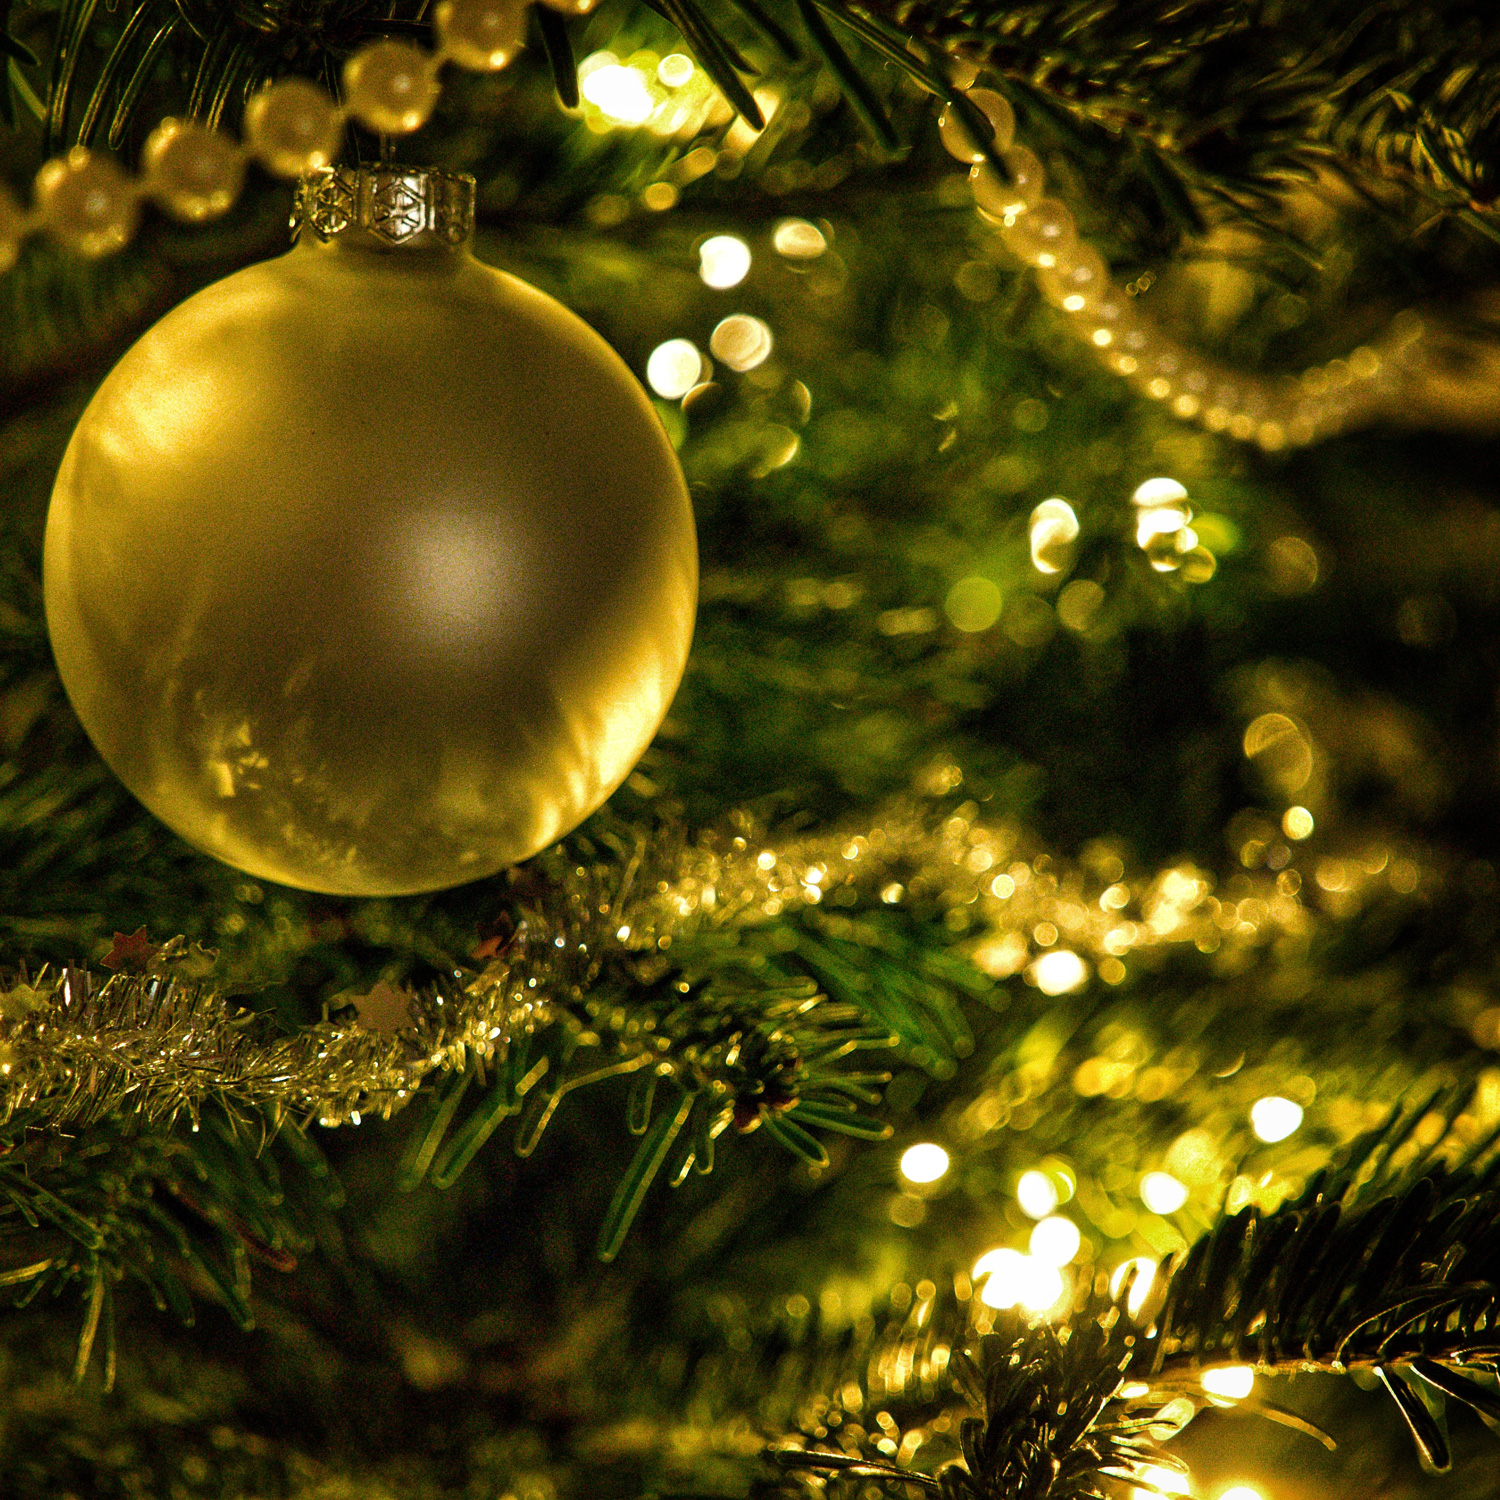 Nahaufnahme eines geschmückten Weihnachtsbaumes mit vielen goldenen Ketten. Im Fokus ist eine goldene Weihnachtskugel.